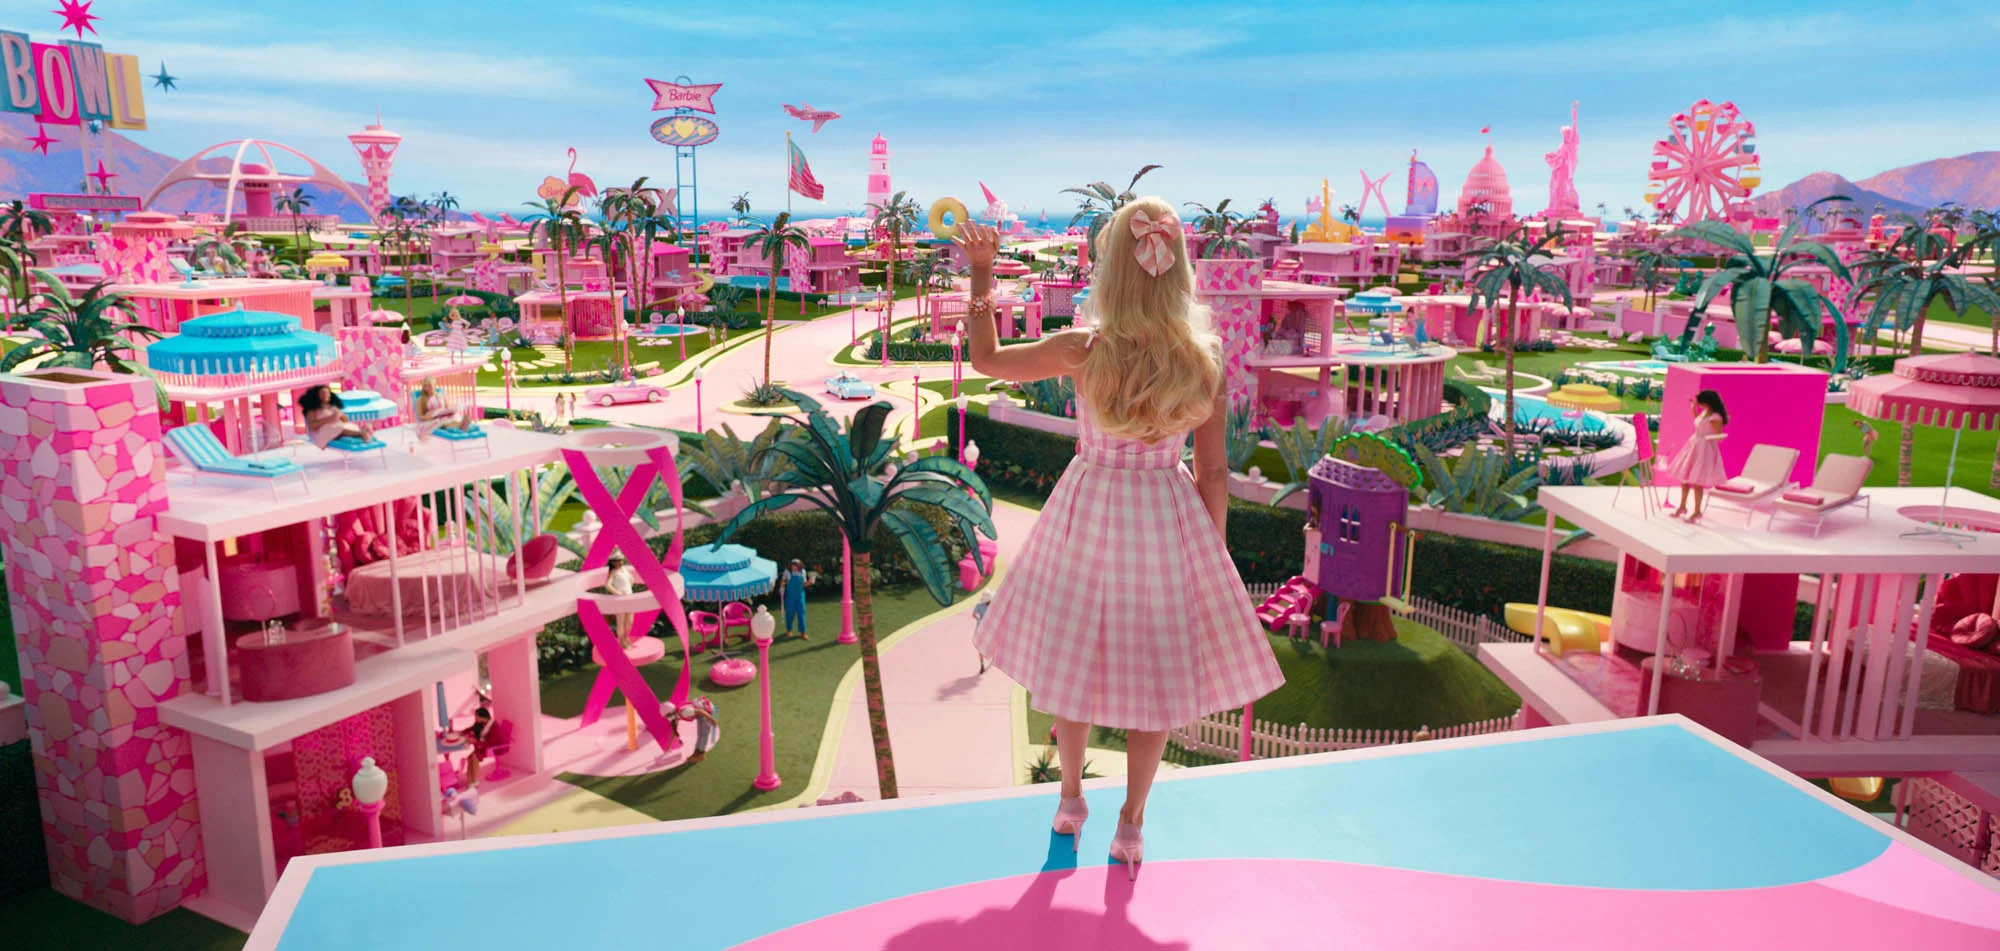 Barbie Barbieland. FlixPix / Alamy Stock Photo